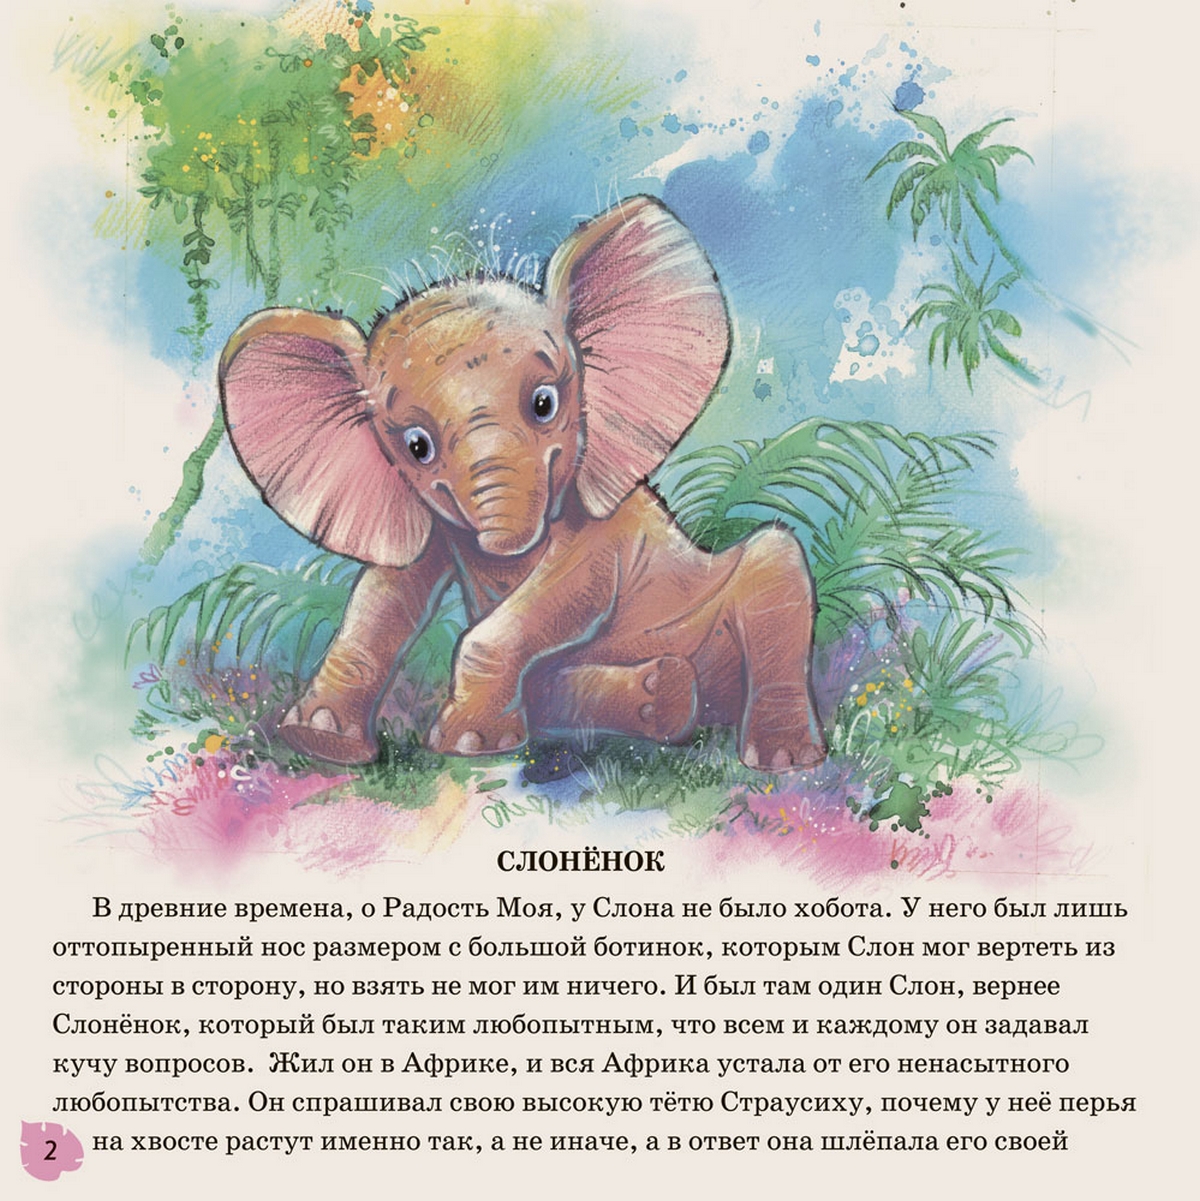 Читать про слона. Книжка Киплинга Слоненок. Киплинг Редьярд "слонёнок". Сказка Слоненок Киплинг.